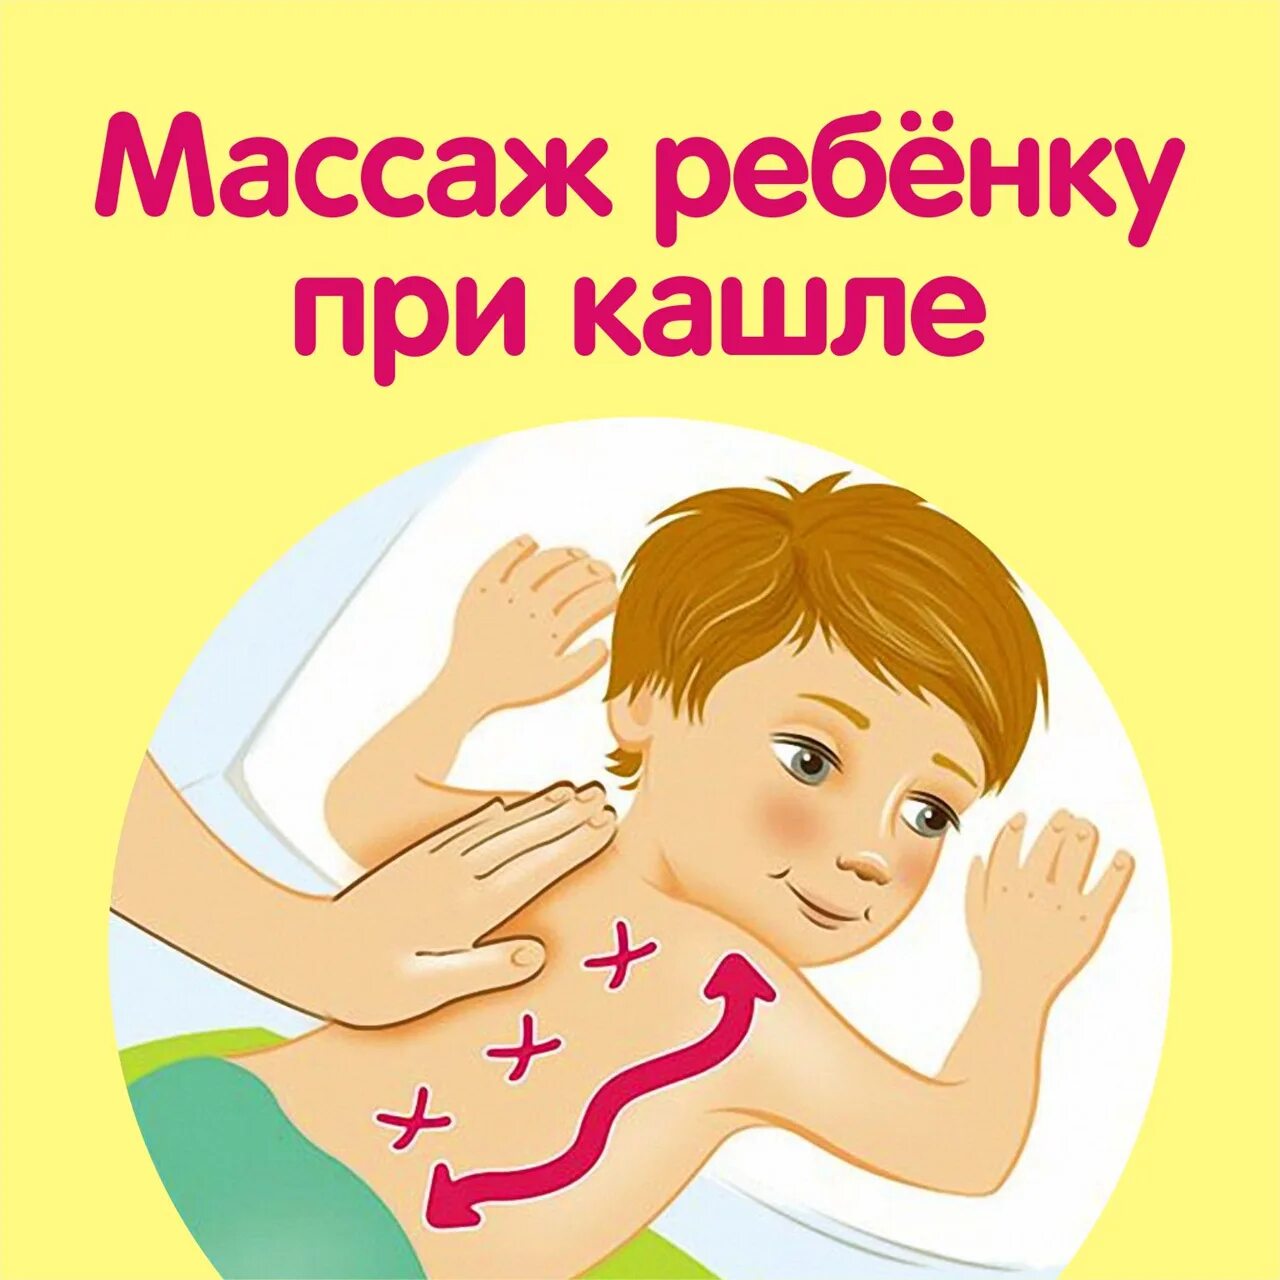 Массаж при орви. Массаж для отхождения мокроты у ребенка 4 года. Массаж при кашле у ребенка для отхождения мокроты в 1 год. Массаж при кашле у ребенка для отхождения мокроты 5 лет. Вибрационный массаж для детей для отхождения мокроты.